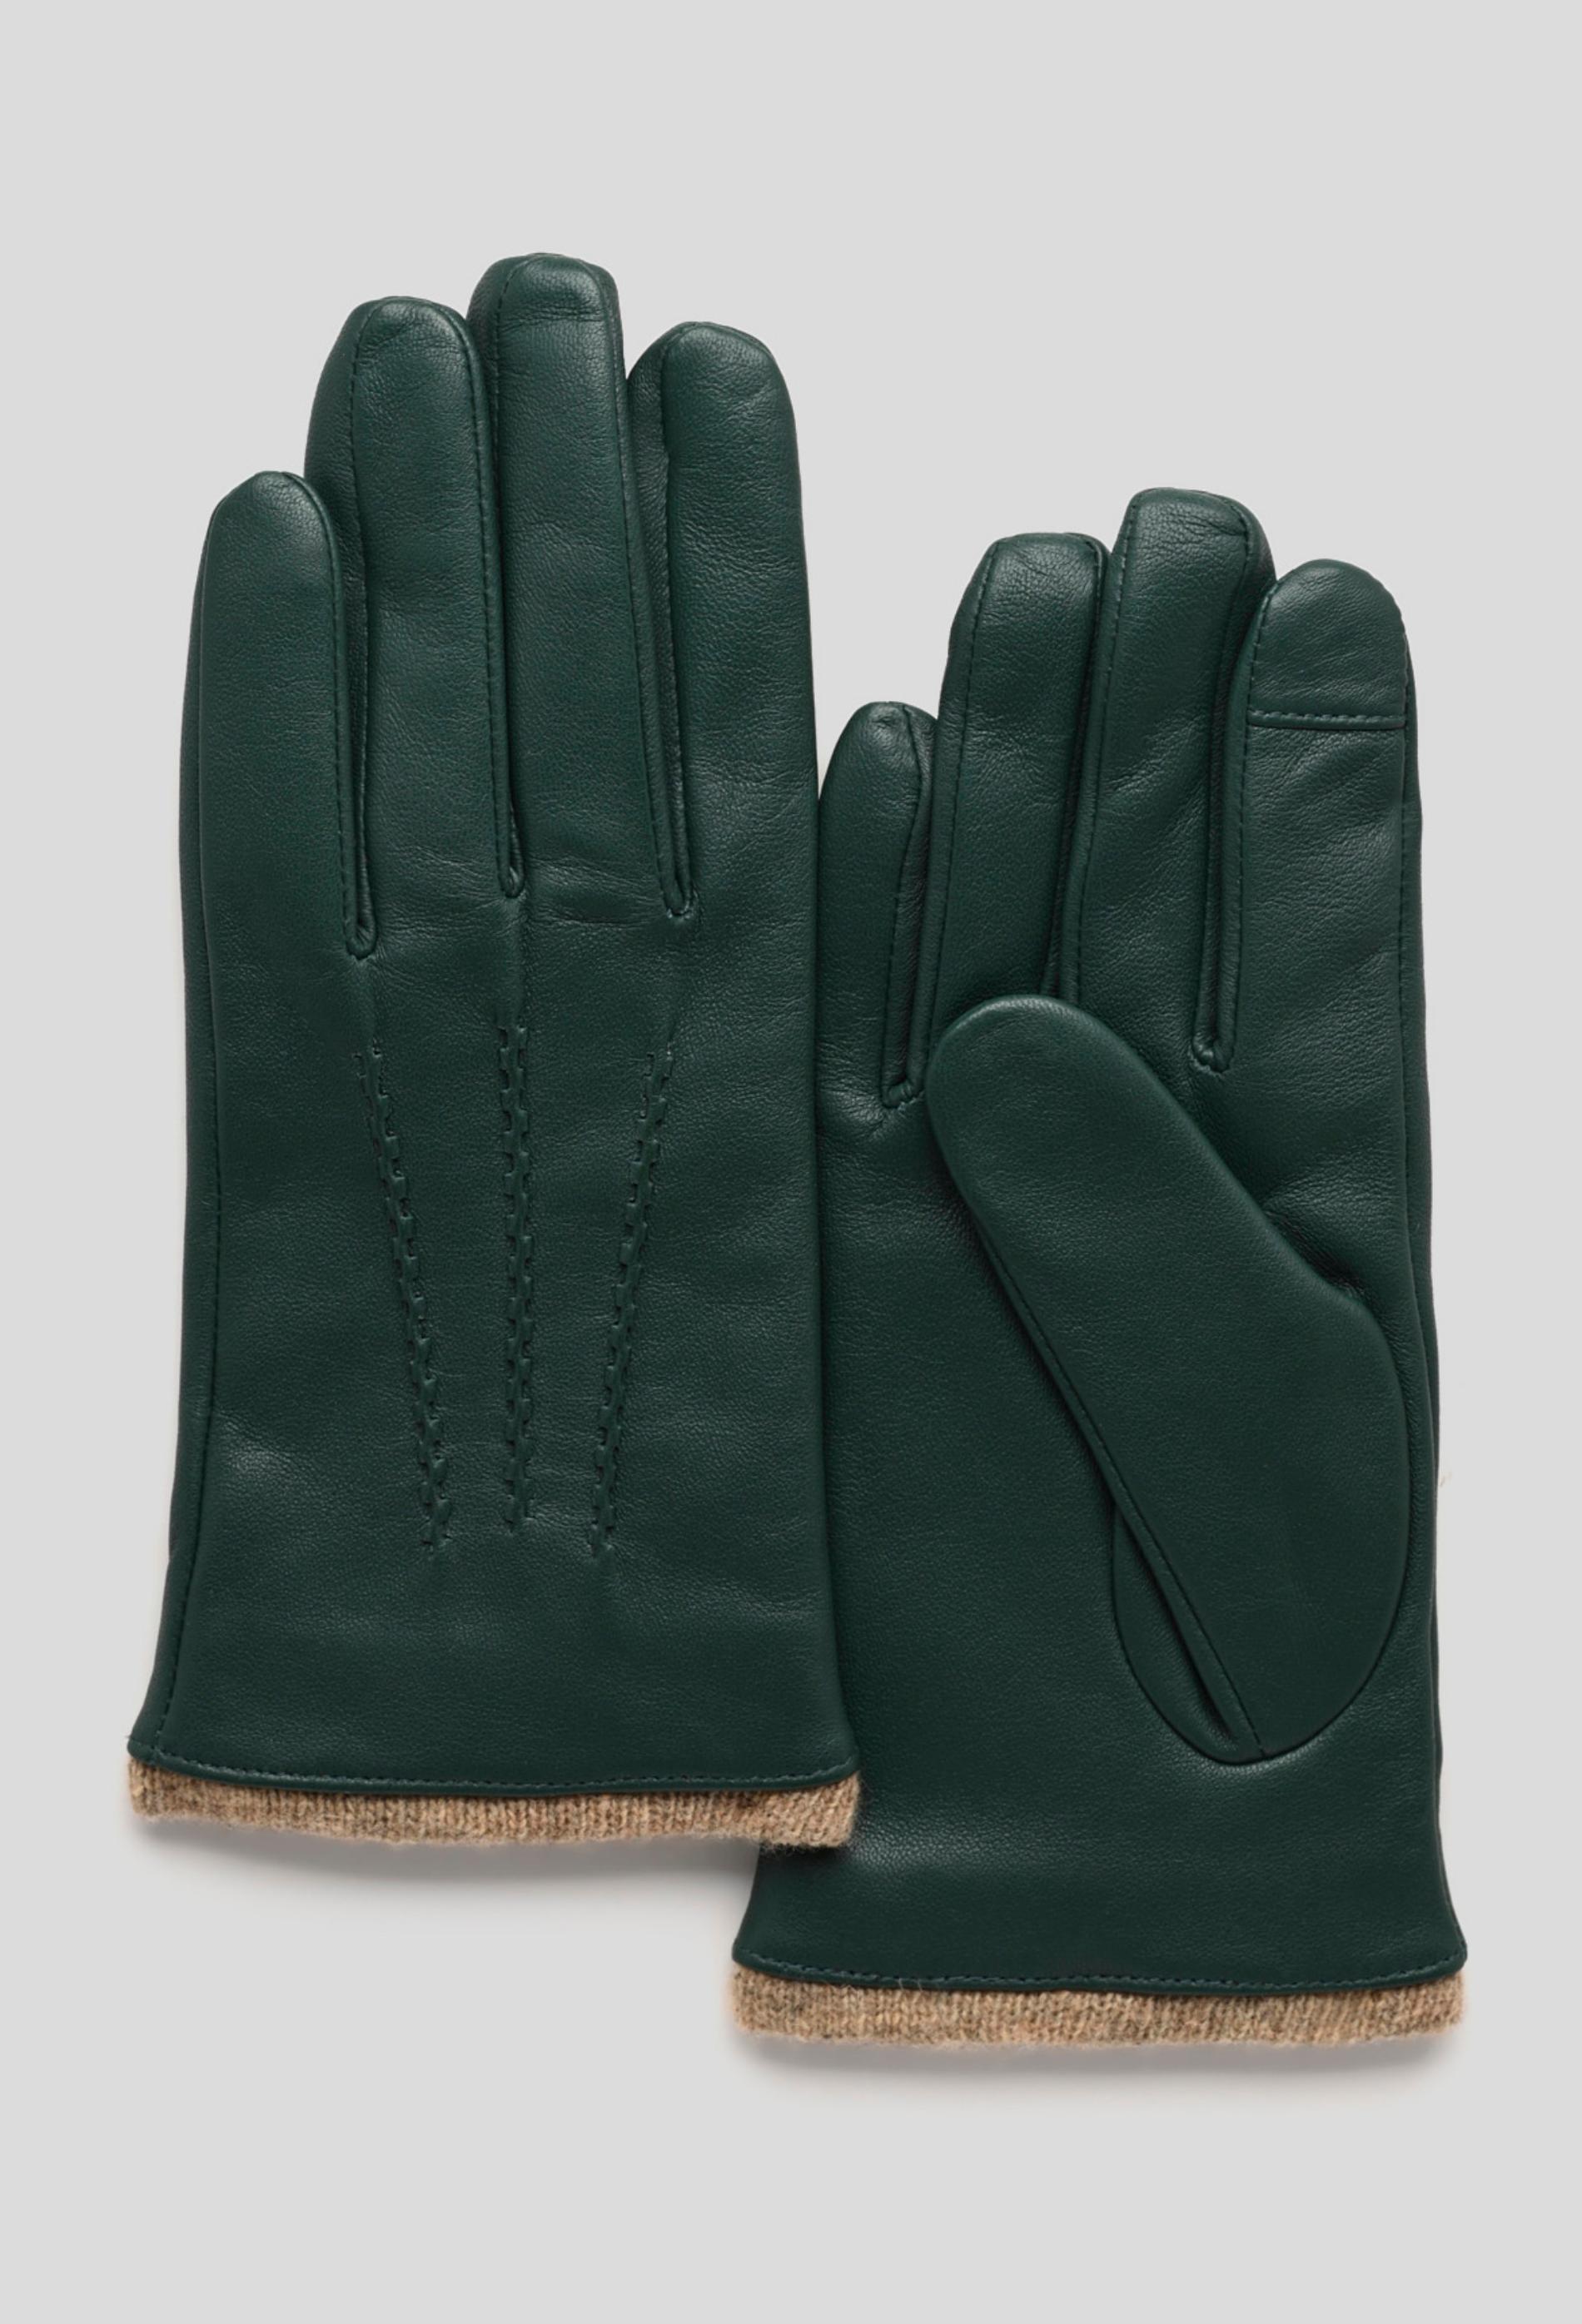 gants tactiles, cuir responsable et contenant de la laine